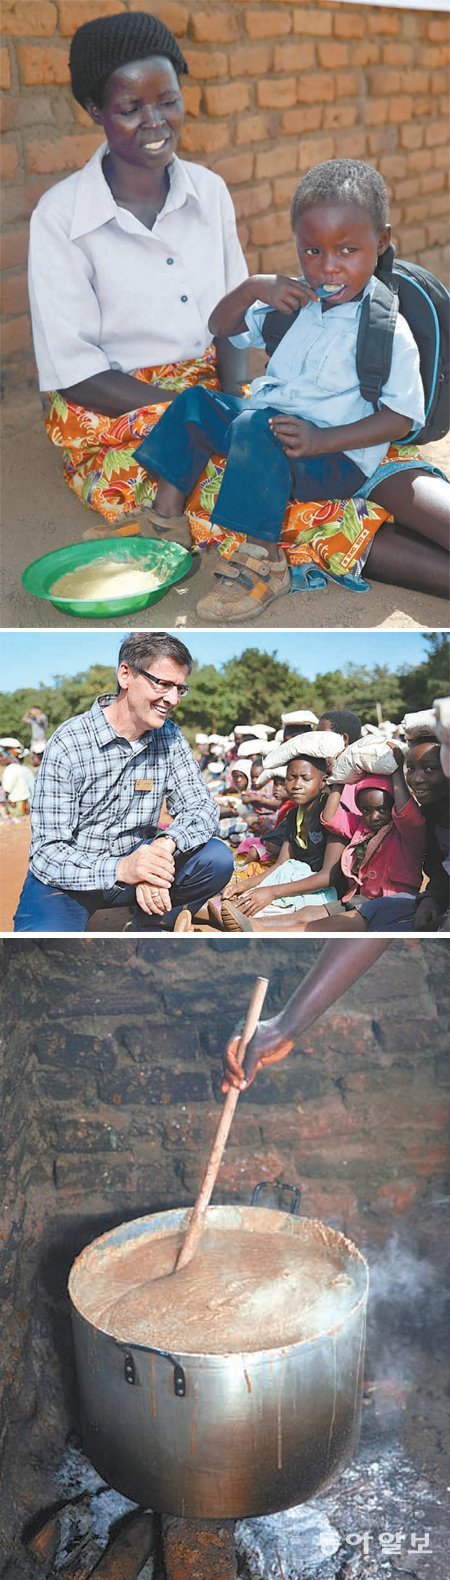 카치판다 지역 아동보육센터에서 바이타밀을 먹고 있는 어린이(맨위쪽 사진), 스티브 런드 뉴스킨 회장(가운데), 바이타밀을 만드는 과정(맨아래쪽 사진).